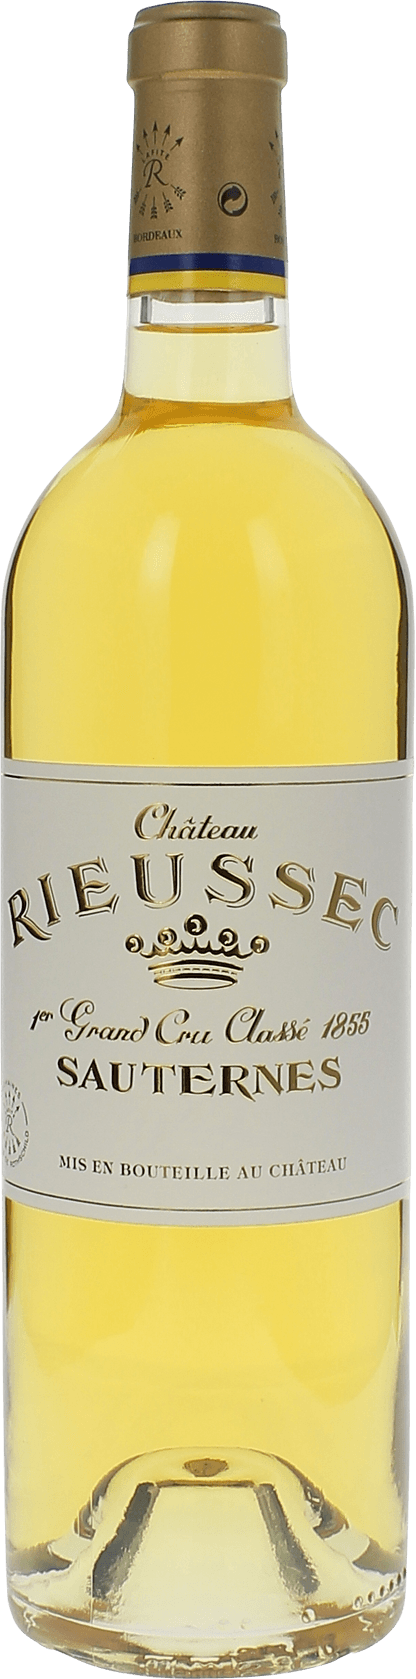 Rieussec 1985 1er cru Sauternes, Bordeaux blanc